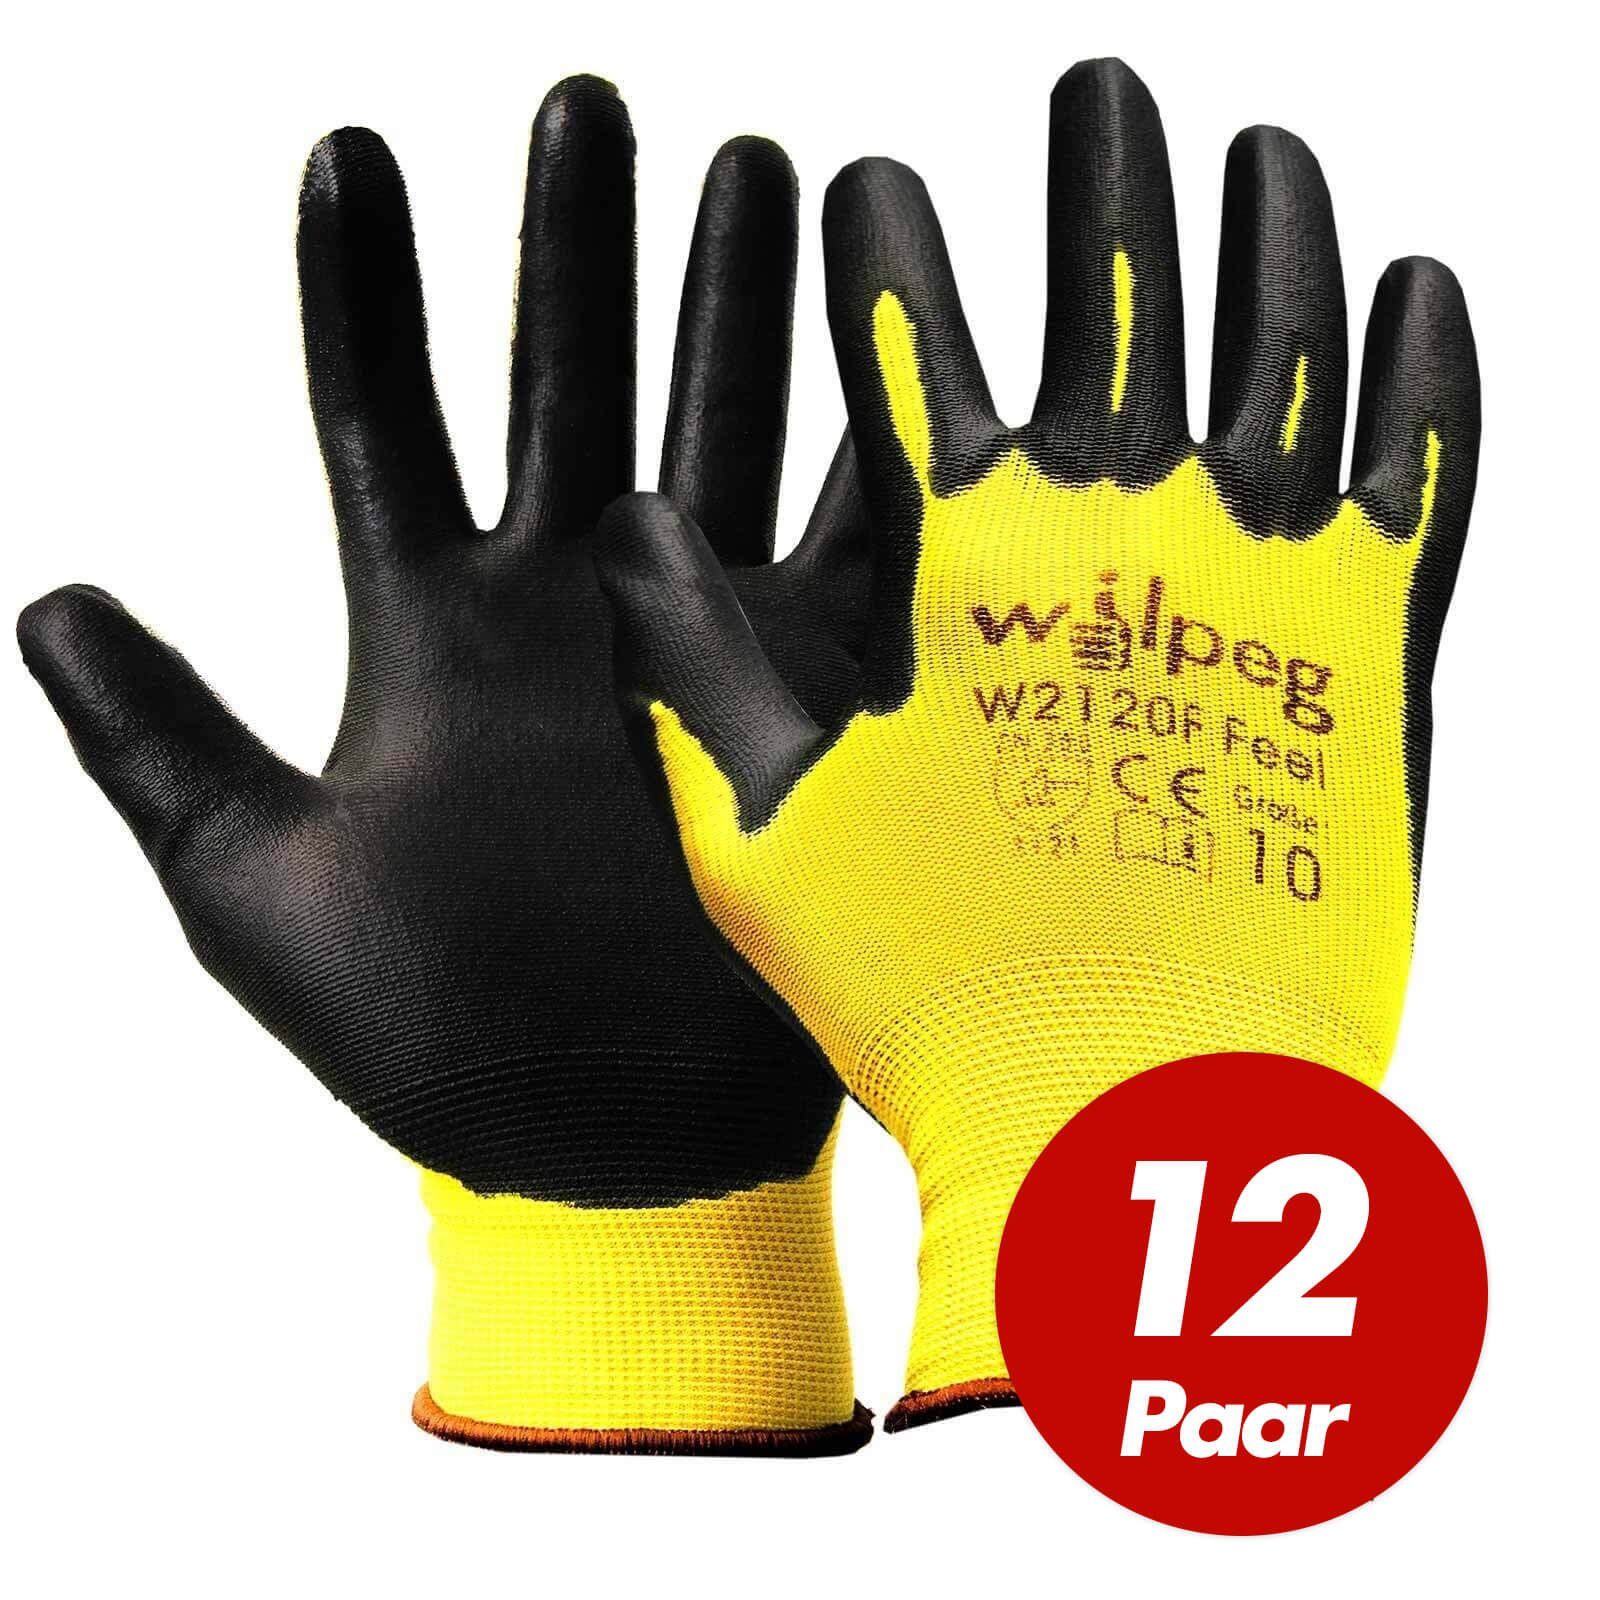 wilpeg® Nitril-Handschuhe WILPEG W2120F Nylon-Strickhandschuhe, PU Feel Handschuhe - VPE 12 Paar (Spar-Set) weiß